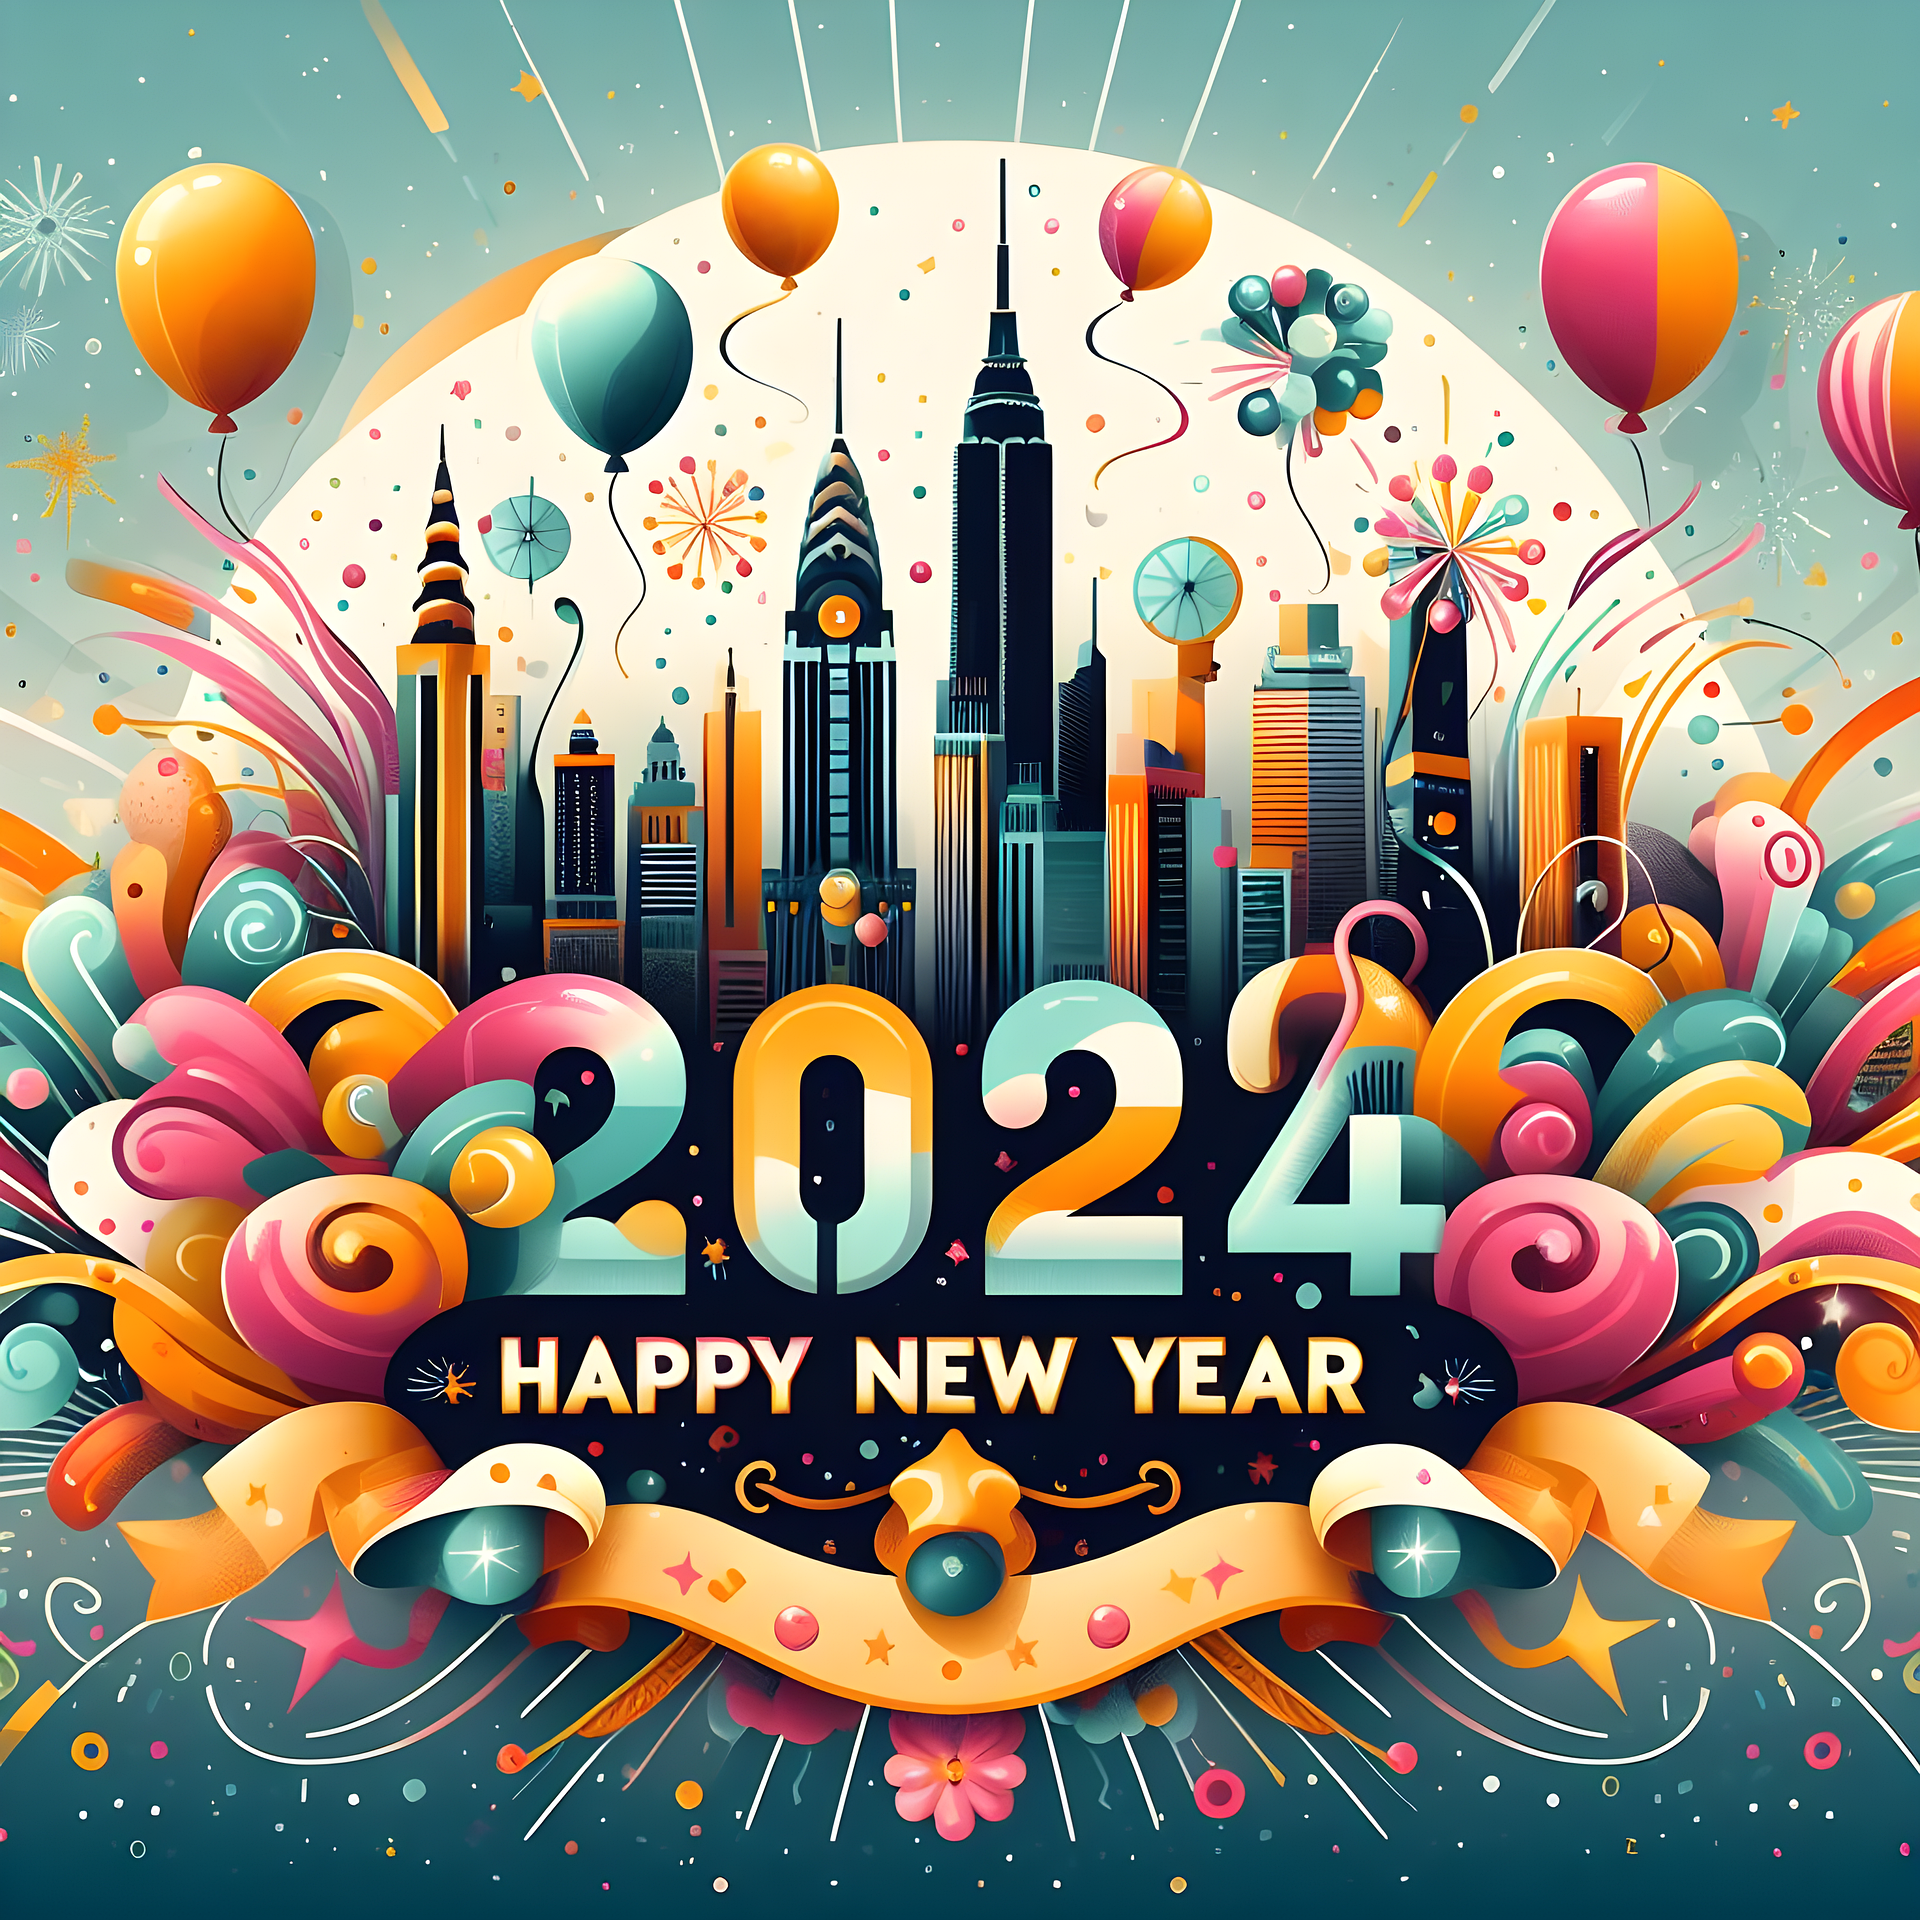 40 lời chúc mừng năm mới 2024 ngắn gọn, ý nghĩa, ấm áp nhất  - Ảnh 4.